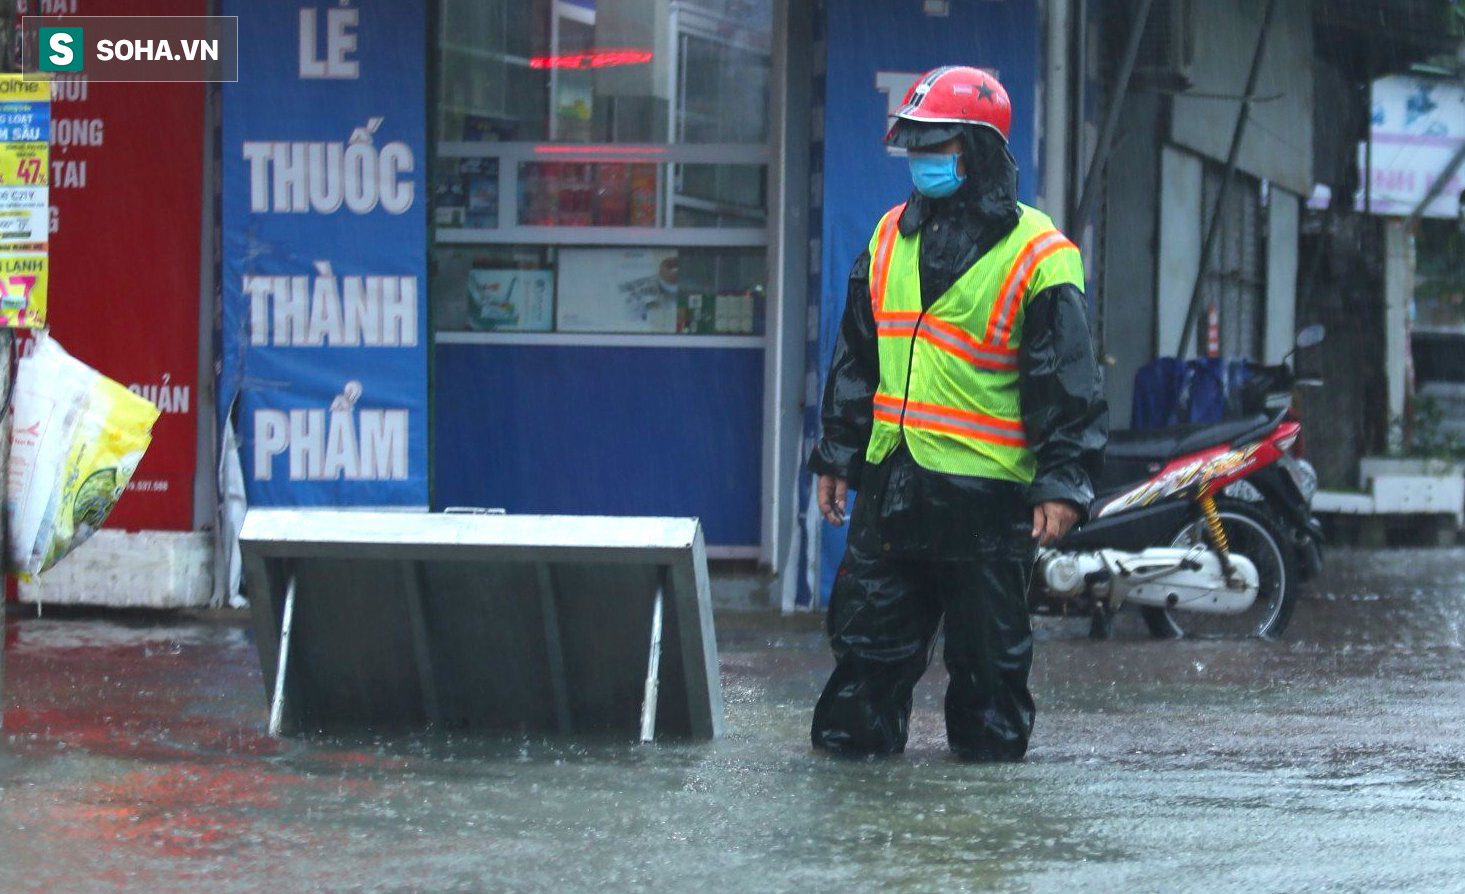 Ô tô, xe máy bì bõm bơi trong biển nước trên phố sau cơn mưa lớn xuyên đêm - Ảnh 6.